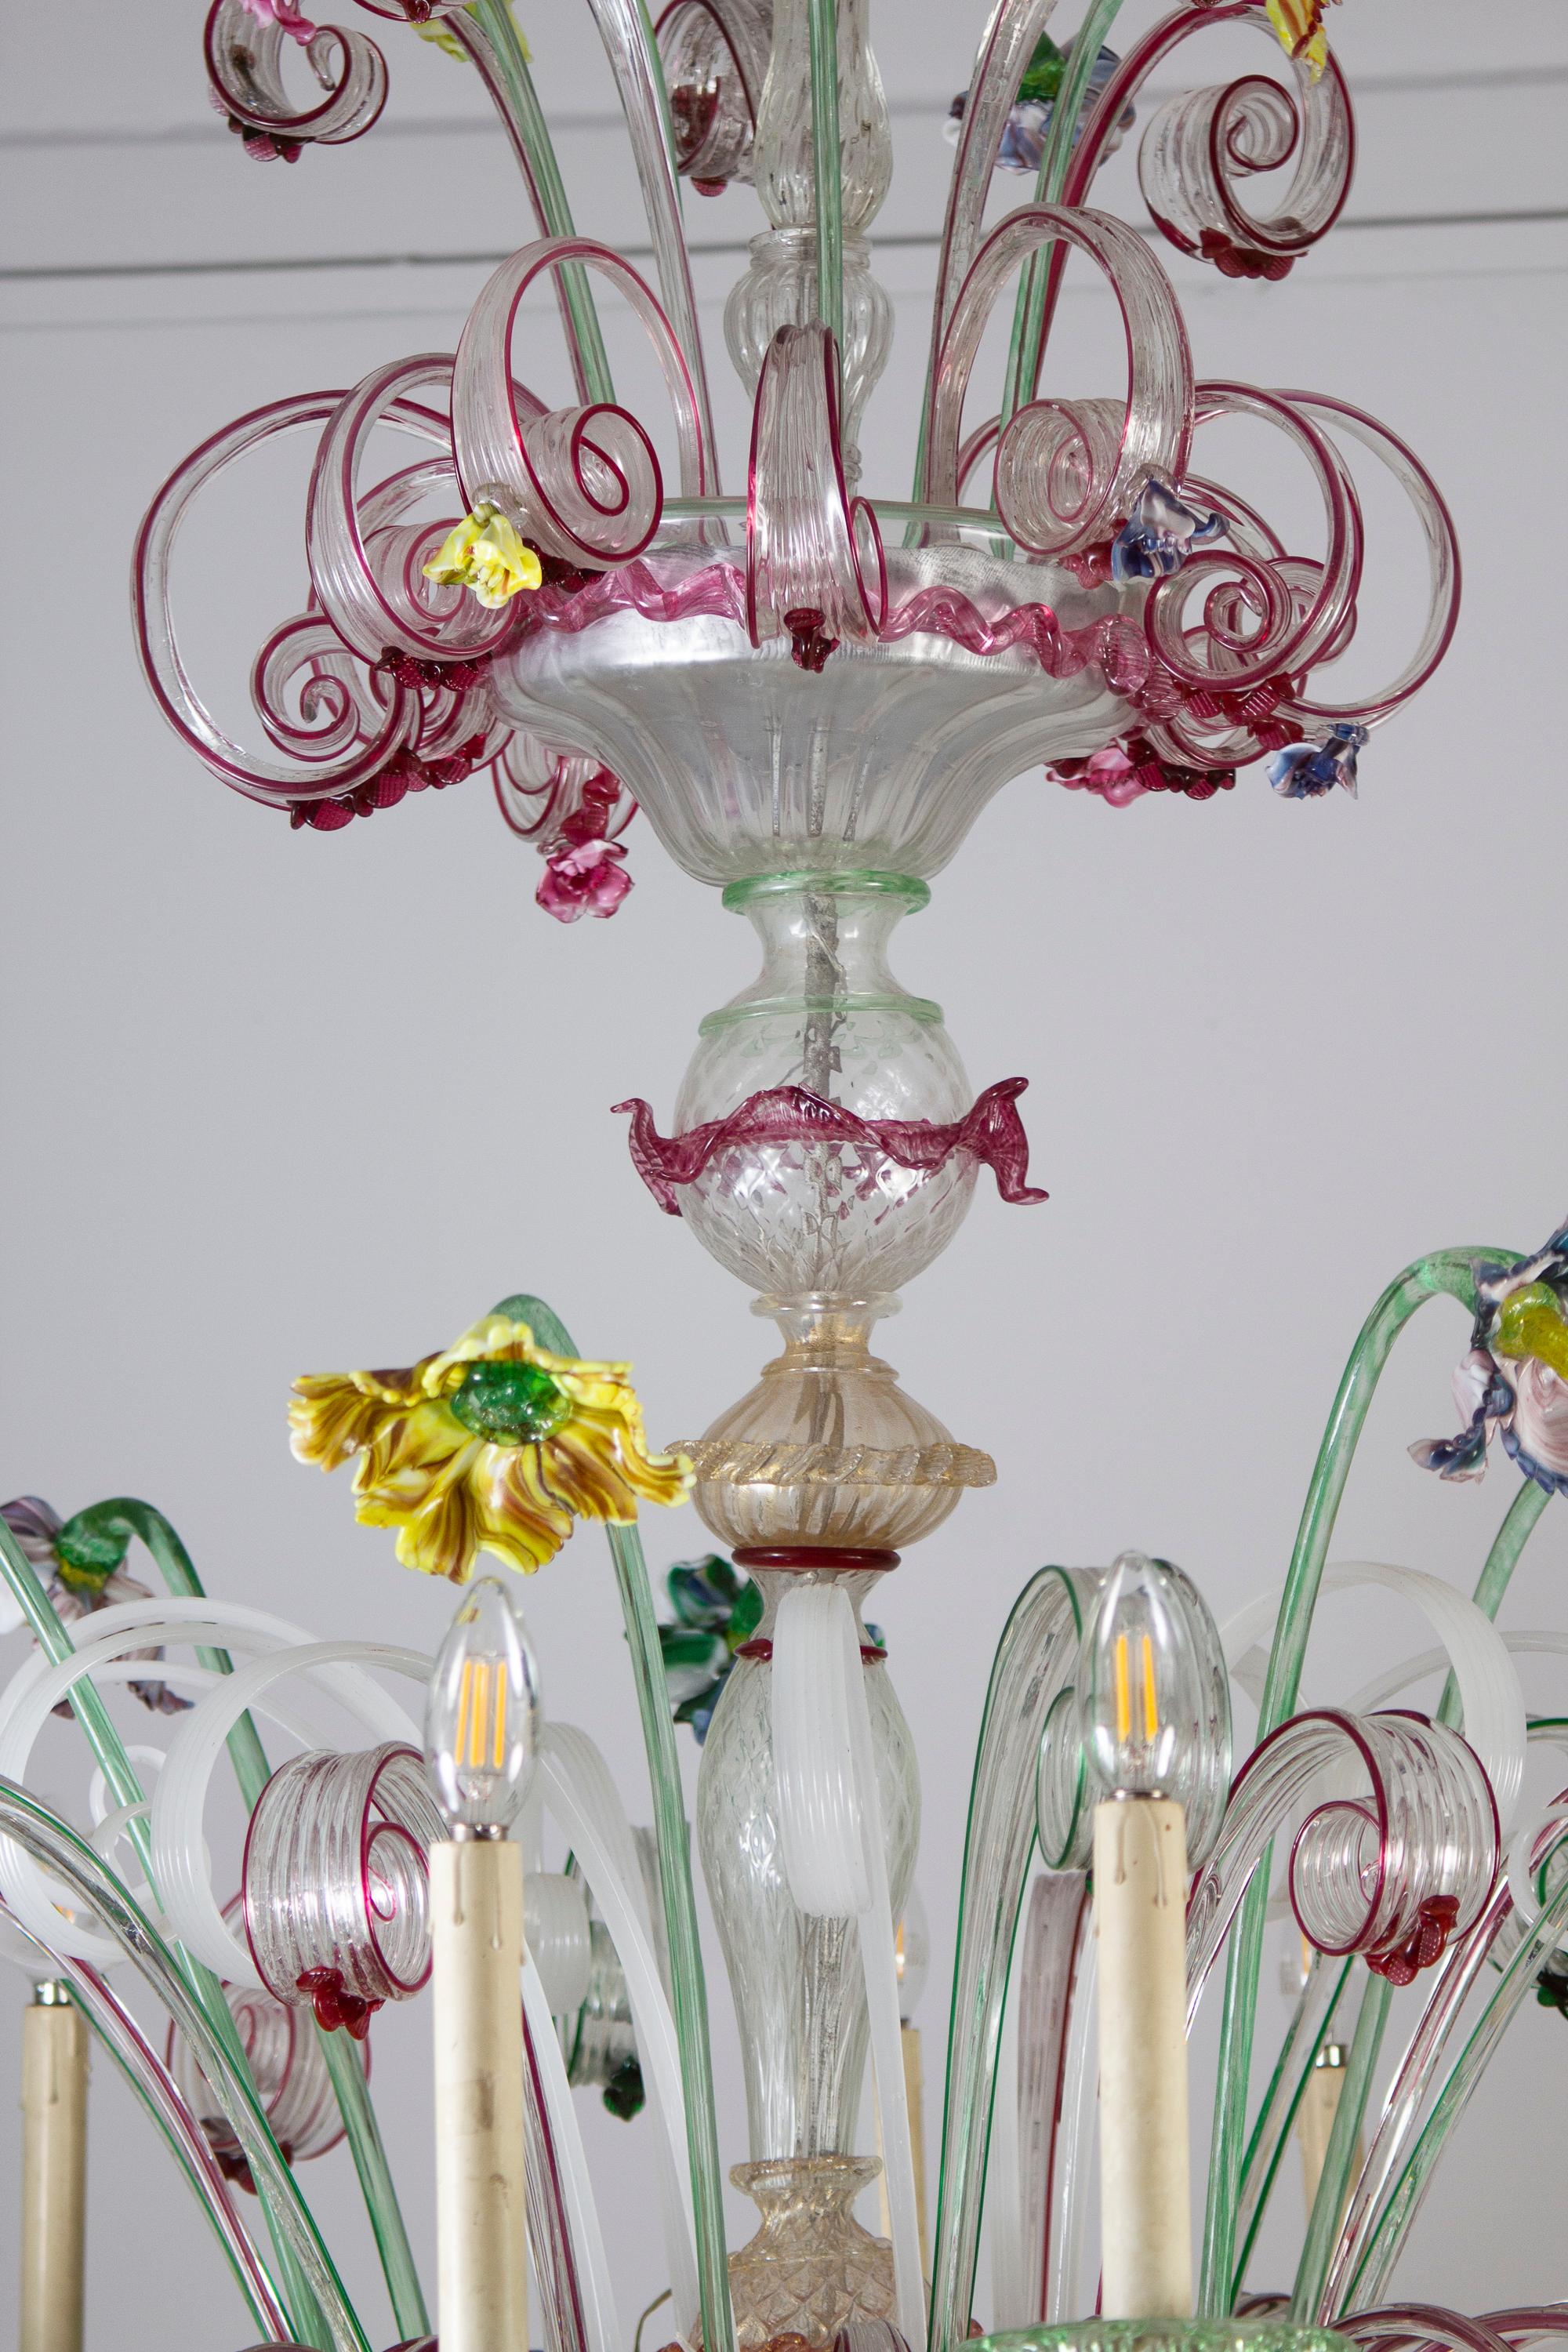 19th Century Magnificent Venetian Murano Glass Ca' Rezzonico Chandelier 1880  For Sale